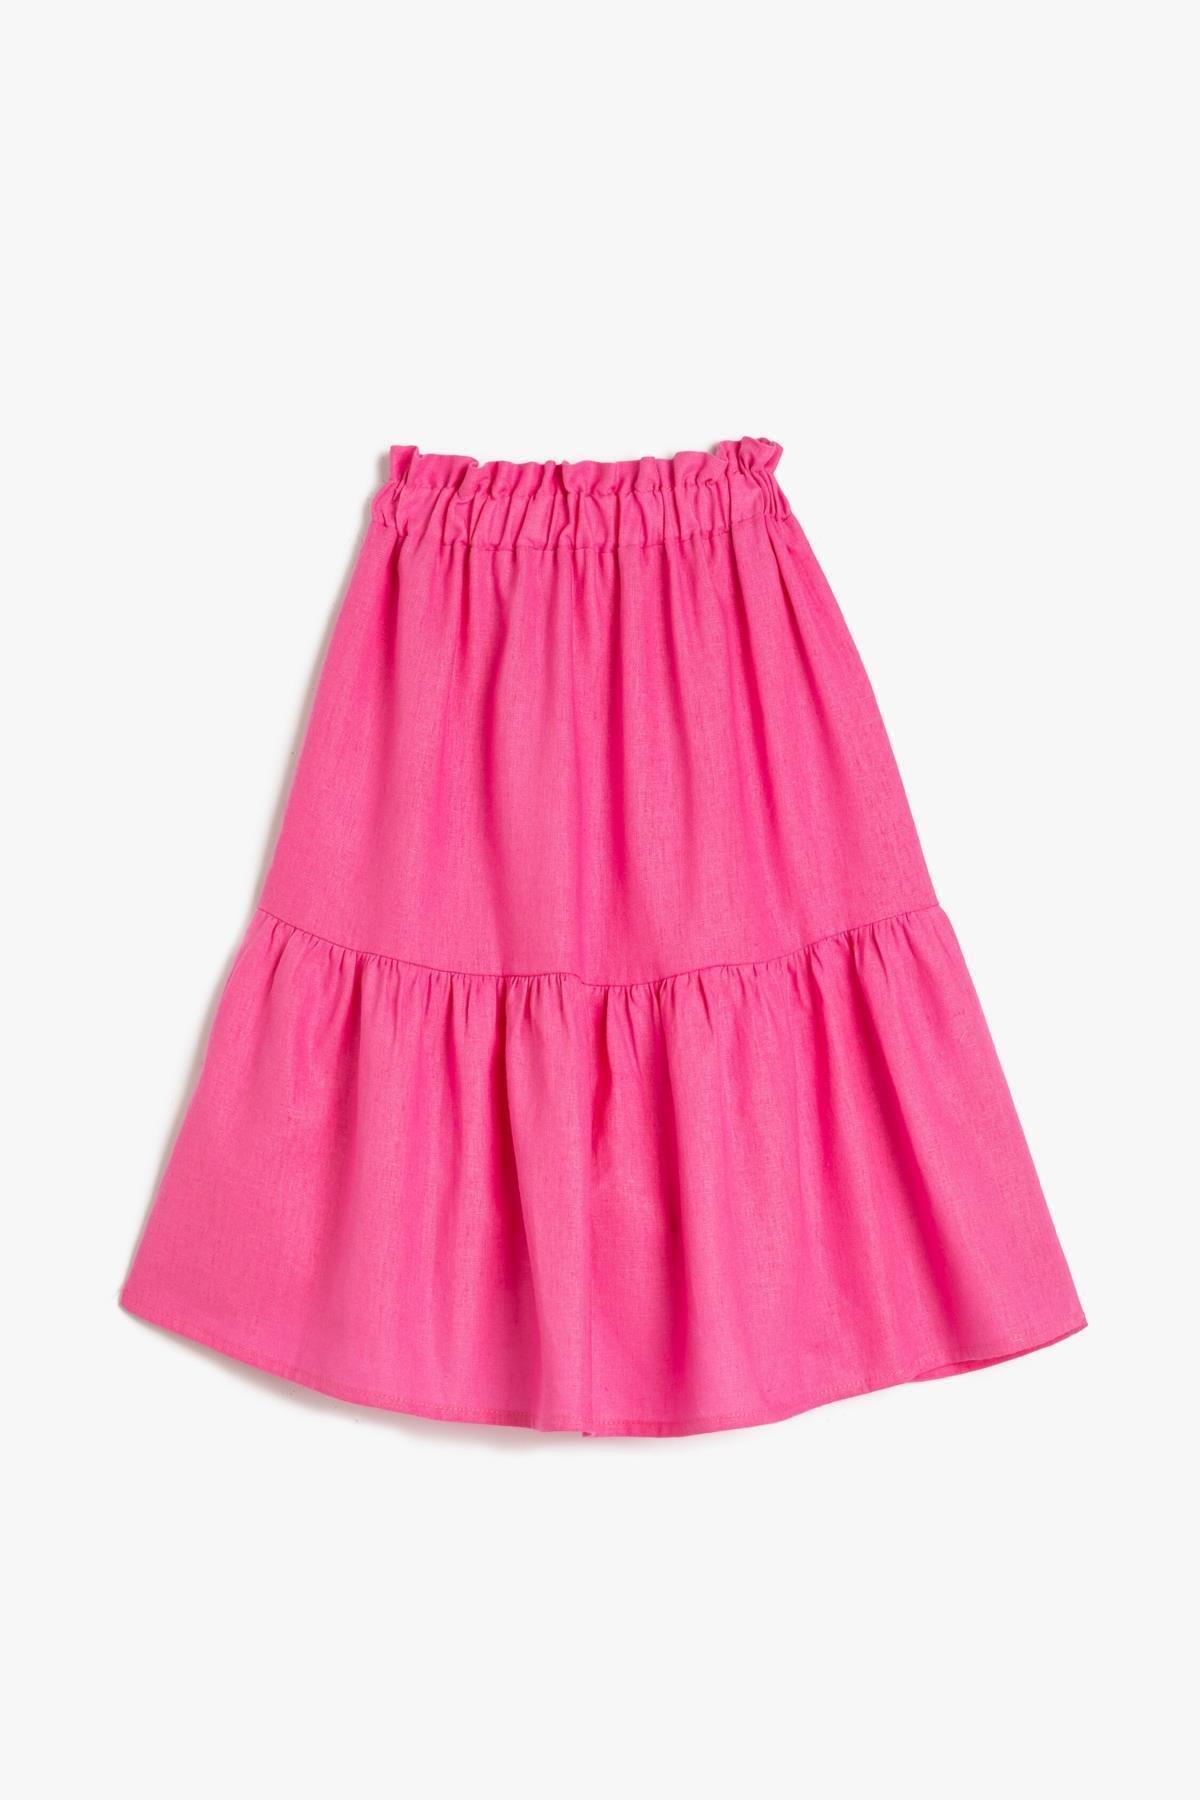 Koton - Pink Midi Layered Skirt, Kids Girls